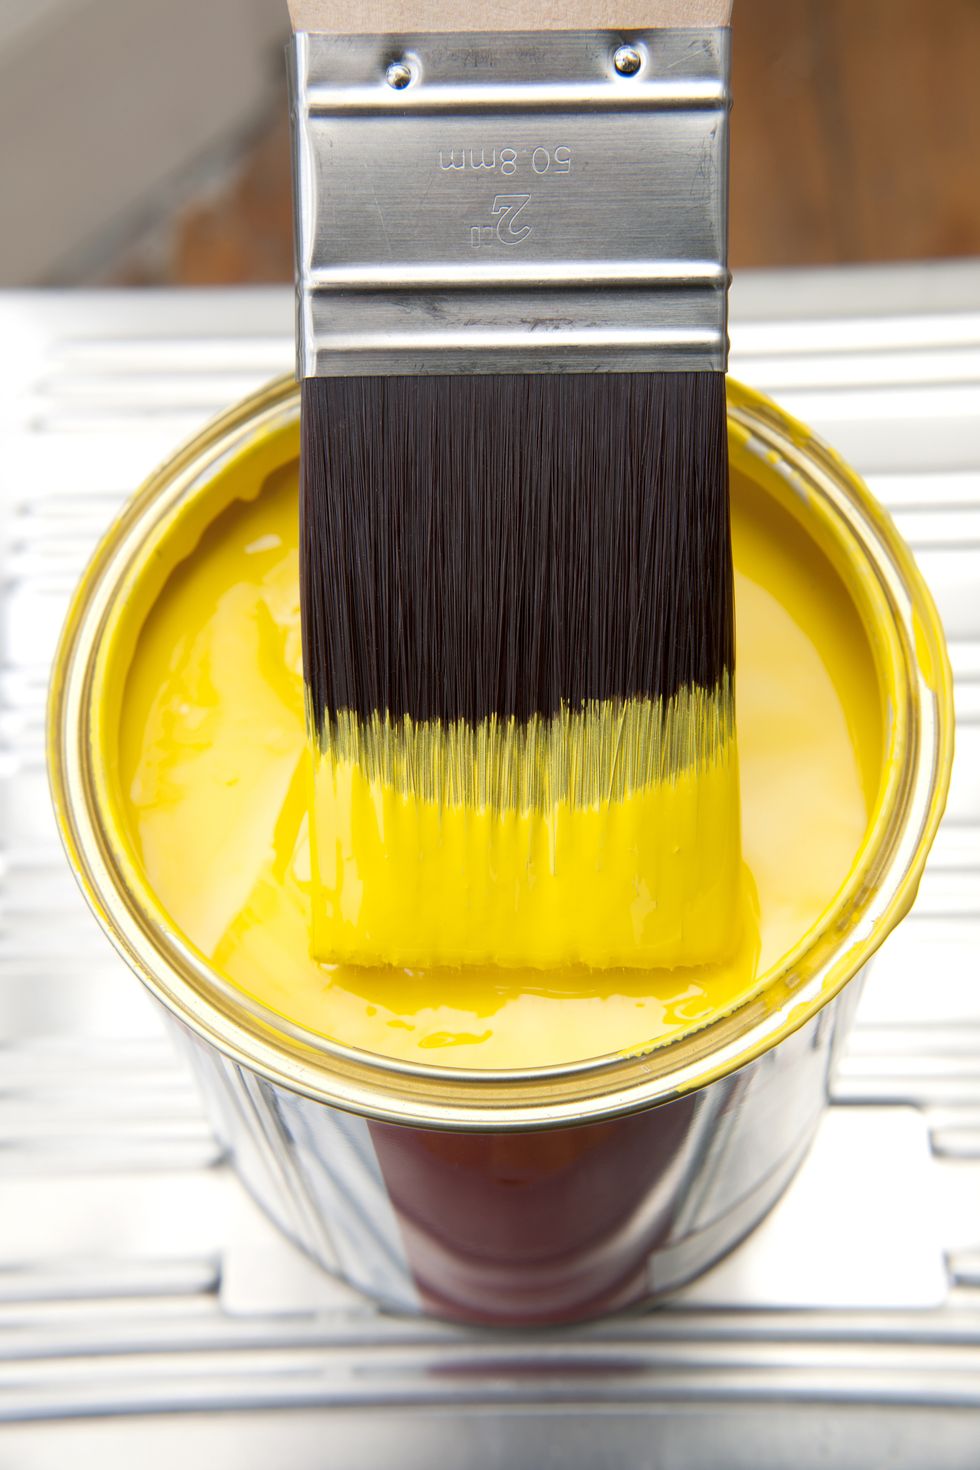 Brush and yellow paint